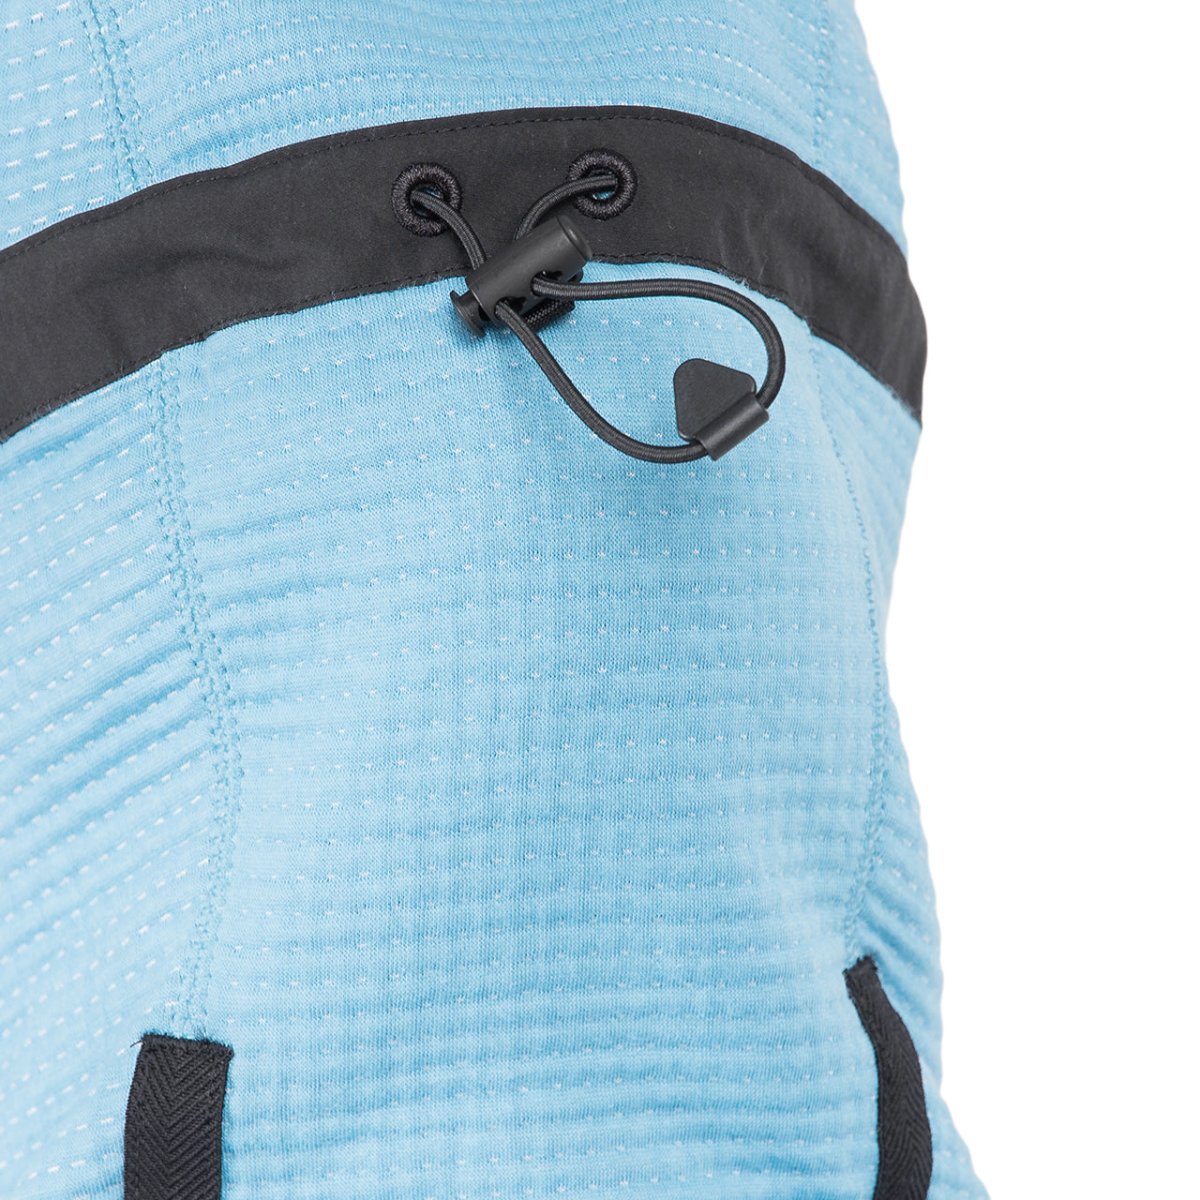 Nike Tech Pack Engineered Full Zip Hoodie Jacket (Hellblau)  - Allike Store